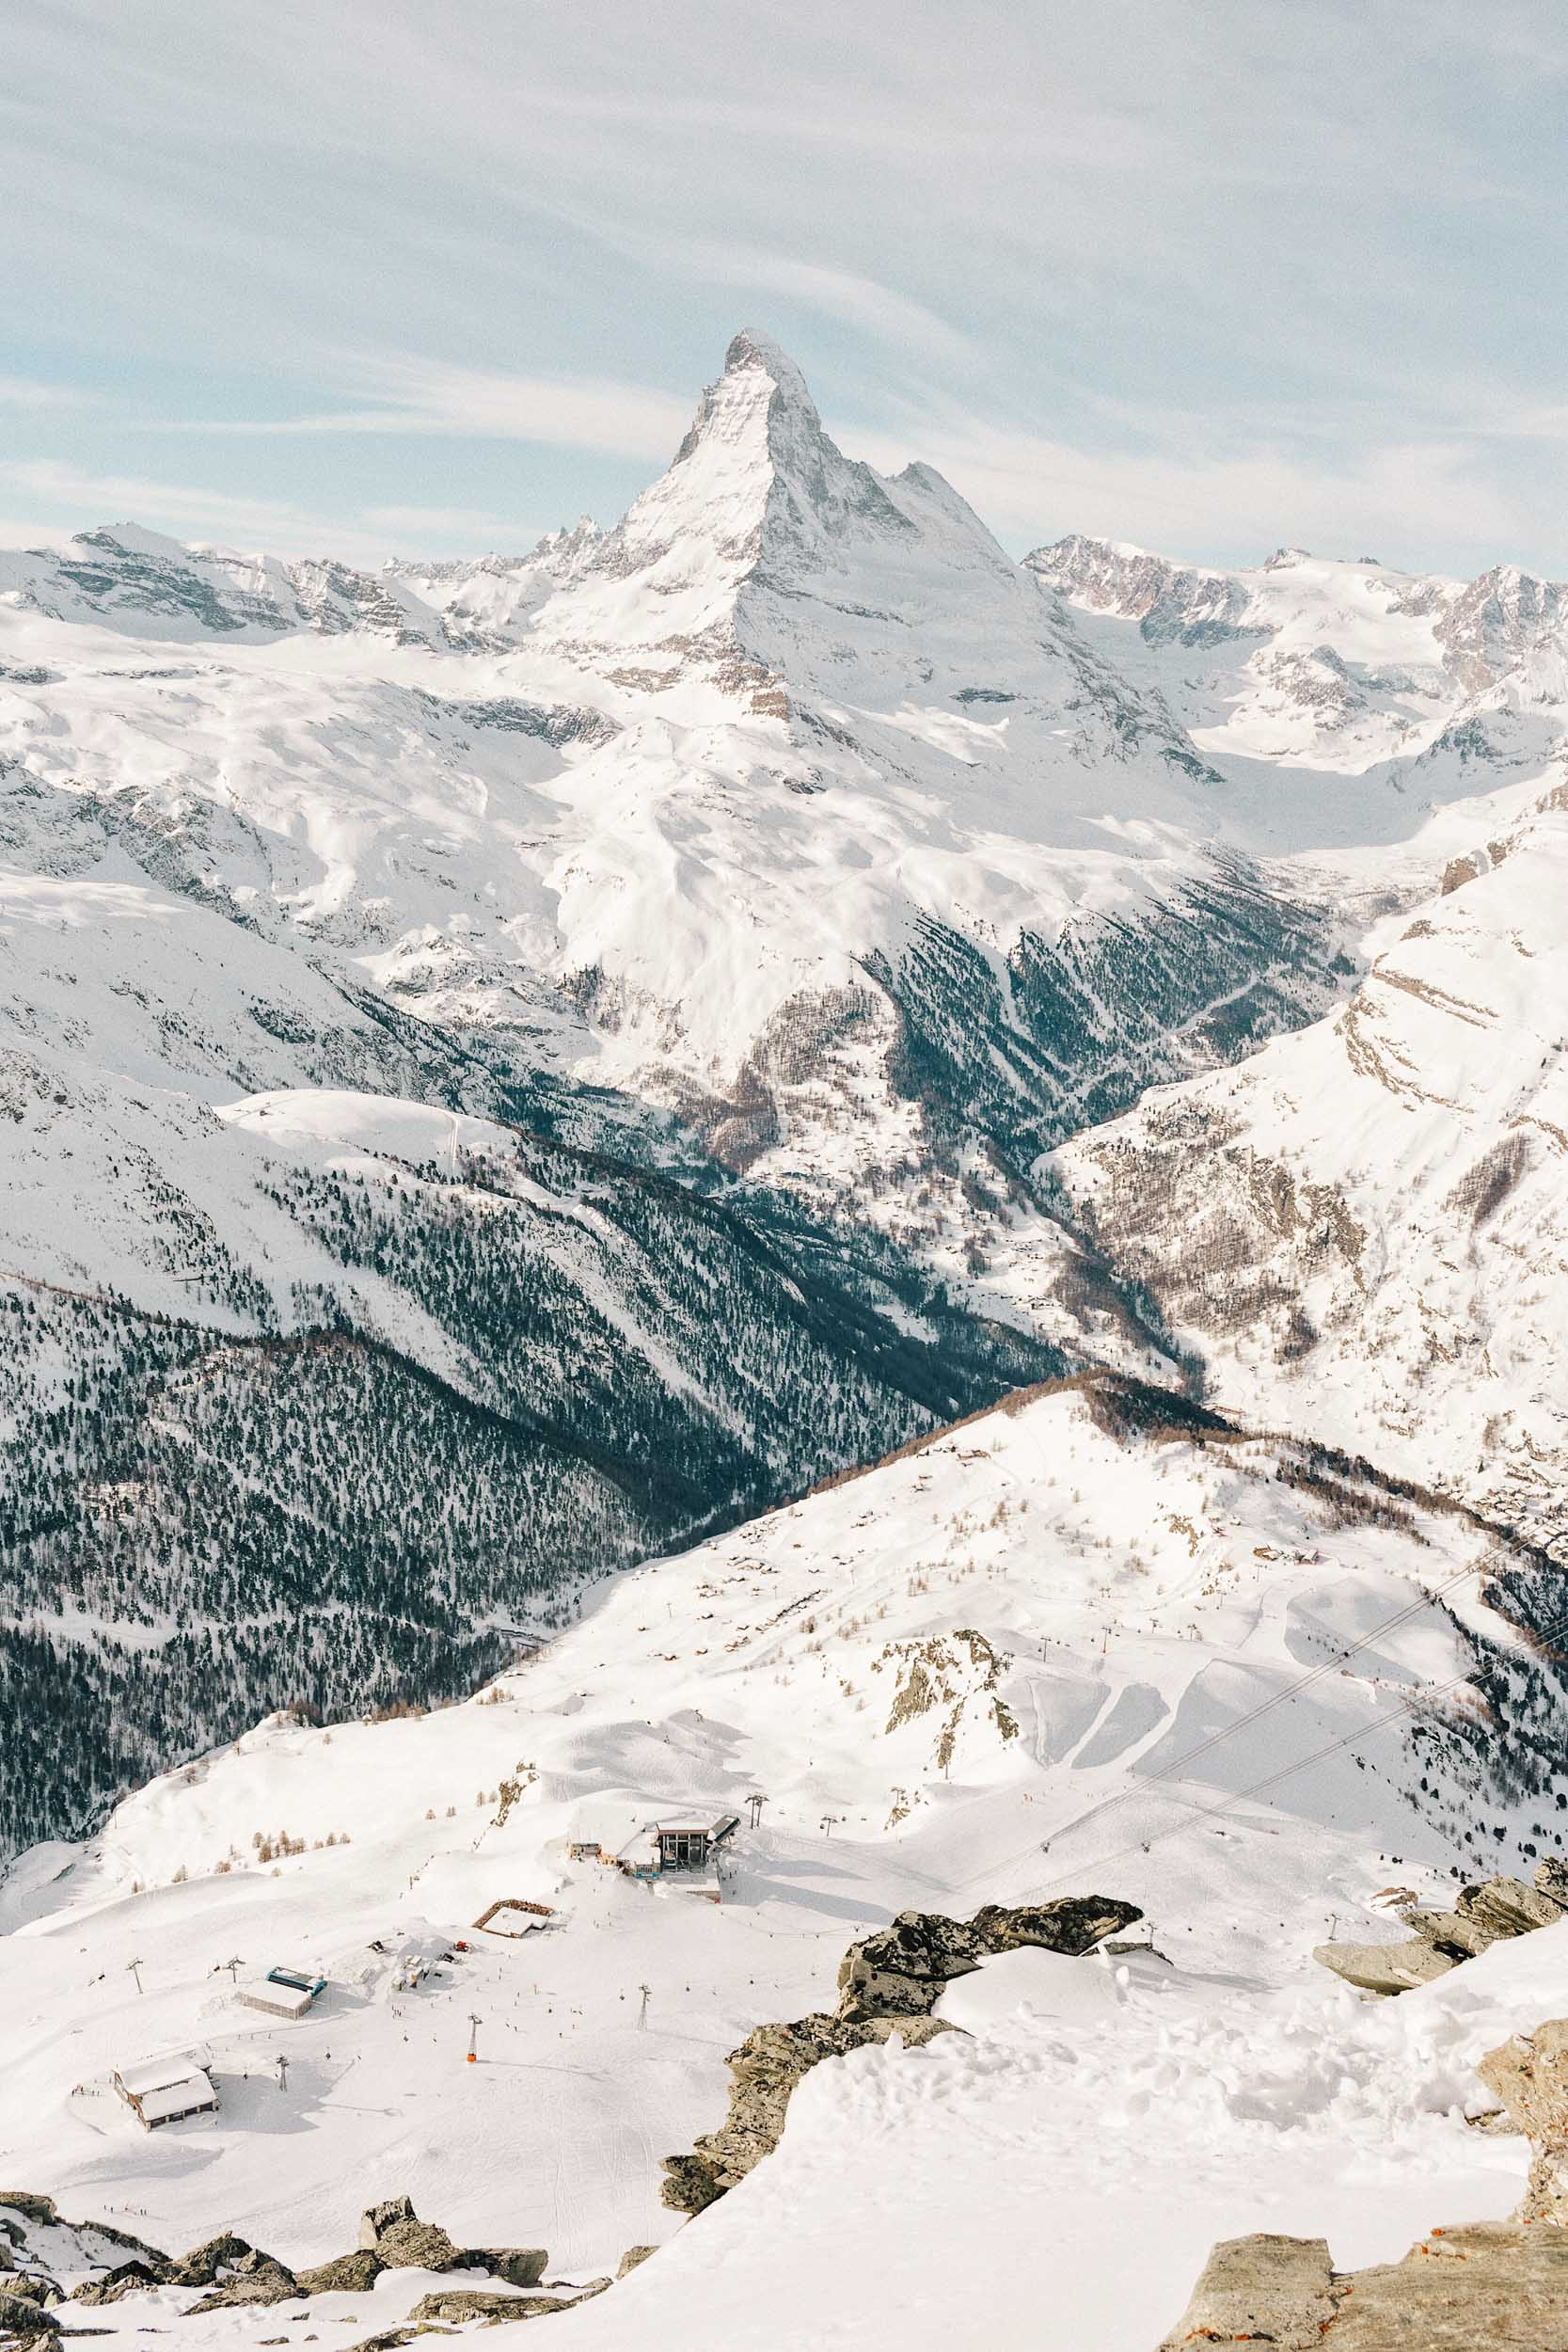 The world famous Matterhorn!